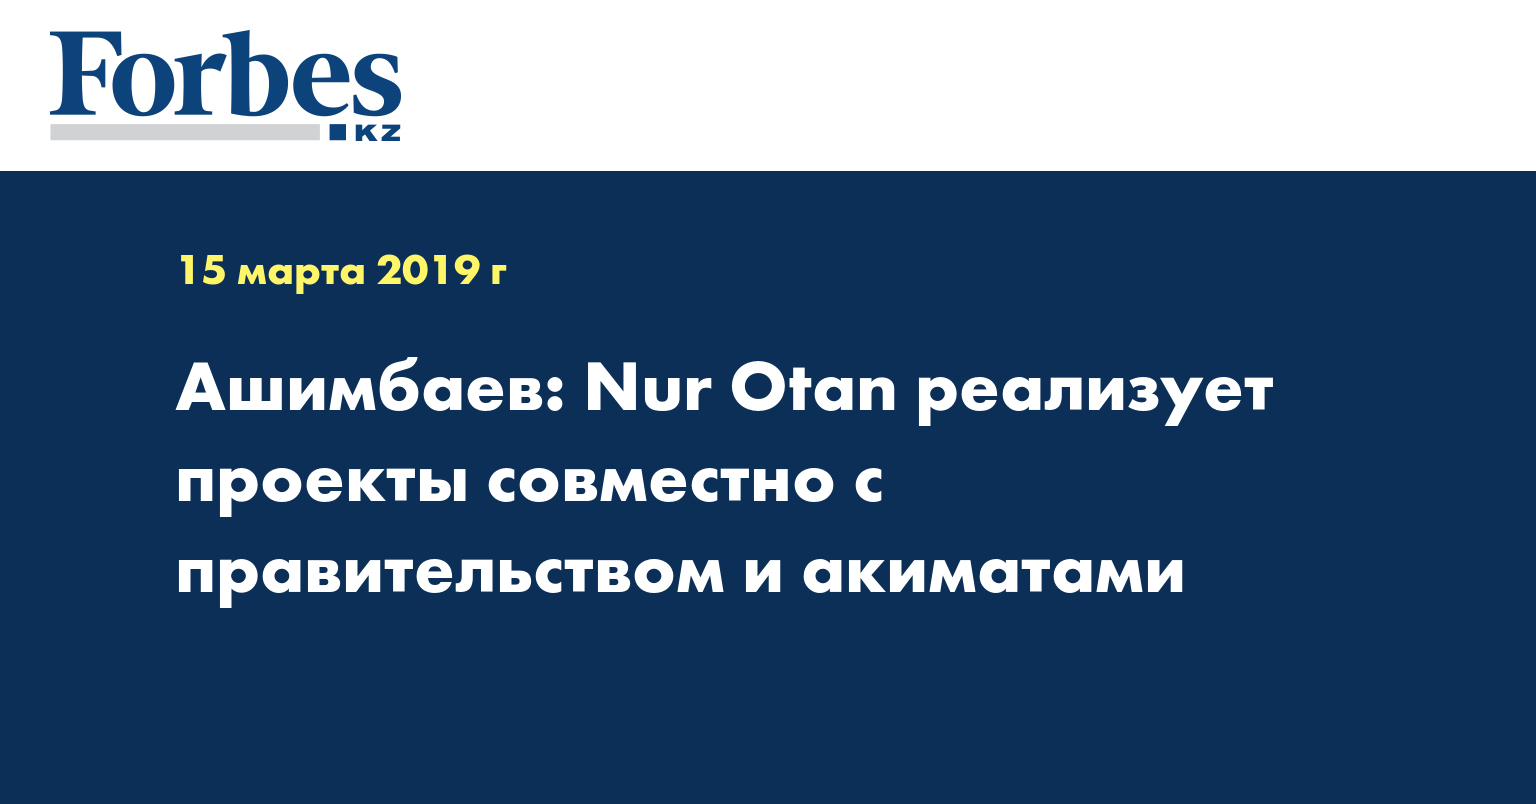 Ашимбаев: Nur Otan реализует проекты совместно с правительством и акиматами